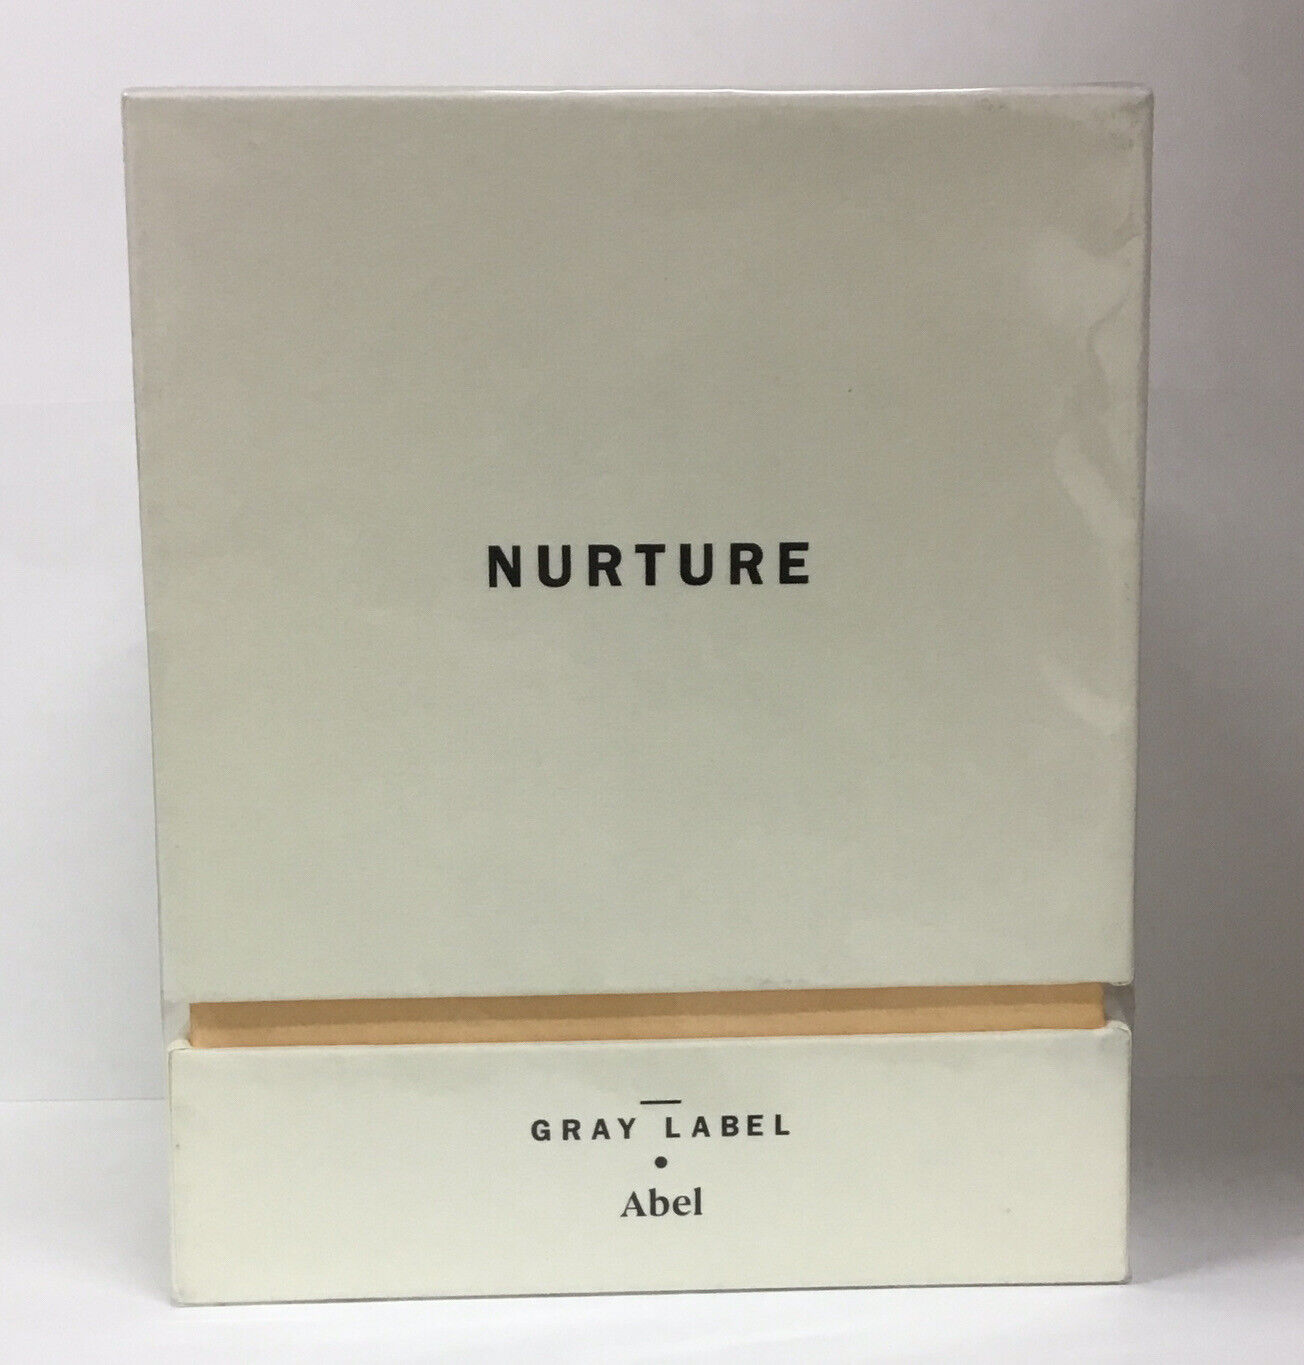 Abel Gray Label Nurture 100% Natural Eau de Parfum 3.4oz as pictured